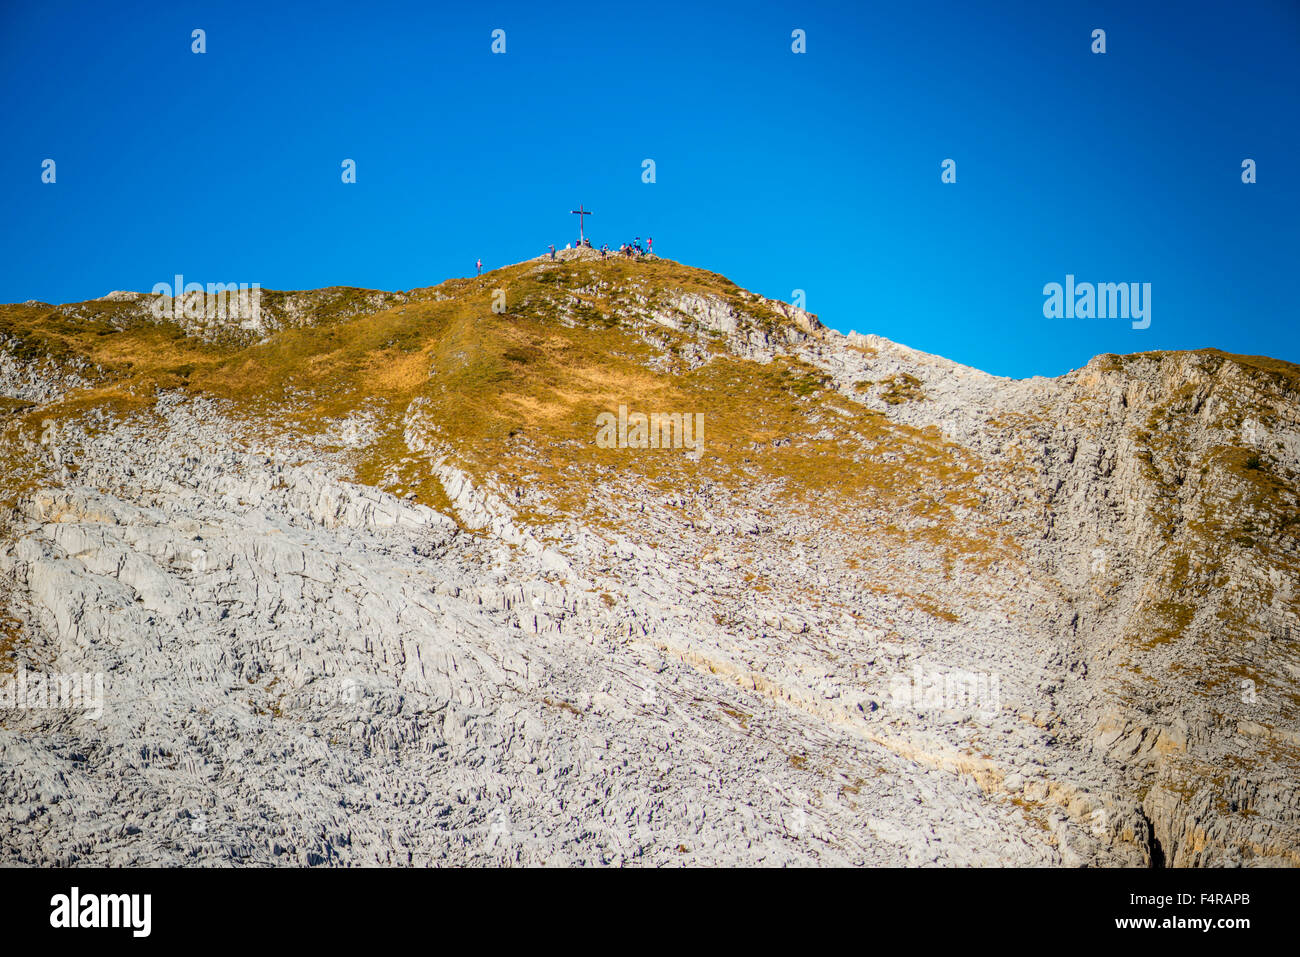 En 2085, m, de l'Allgäu Allgäuer Alpen, Alpes, montagnes, zones de montagne, l'érosion, érosion, paysages, Europe, rock, falaise, Rocky, géologie, g Banque D'Images